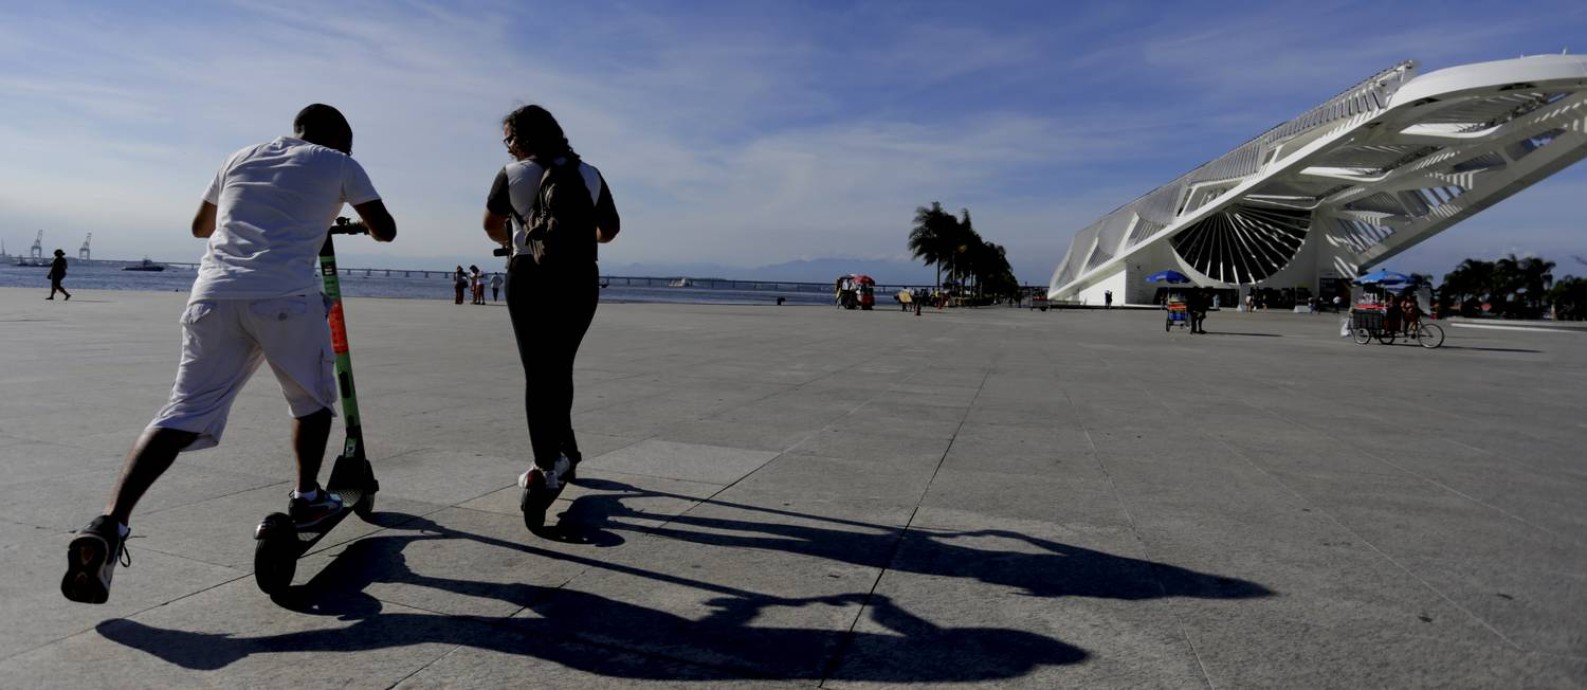 Jovens paseiam de patinetes perto do Museu do Amanhã Foto: Marcelo Theobald em 26/03/2019 / Agência O Globo